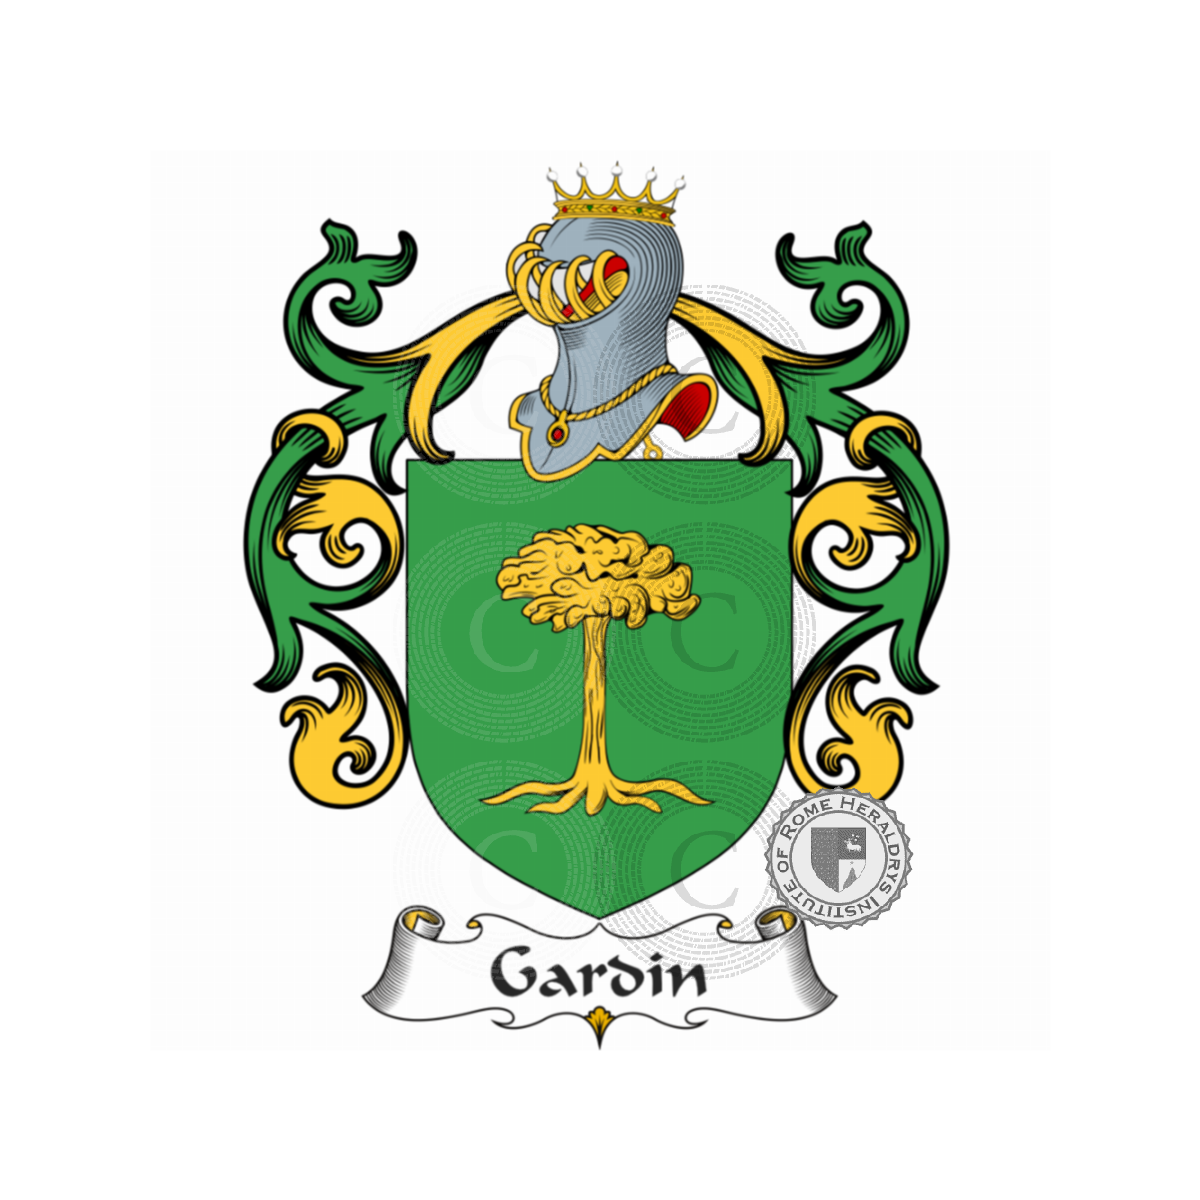 Wappen der Familiedu Gardin, du Gardin,Gardi,Gardin de Boishamon,Gardin de Lapillardière